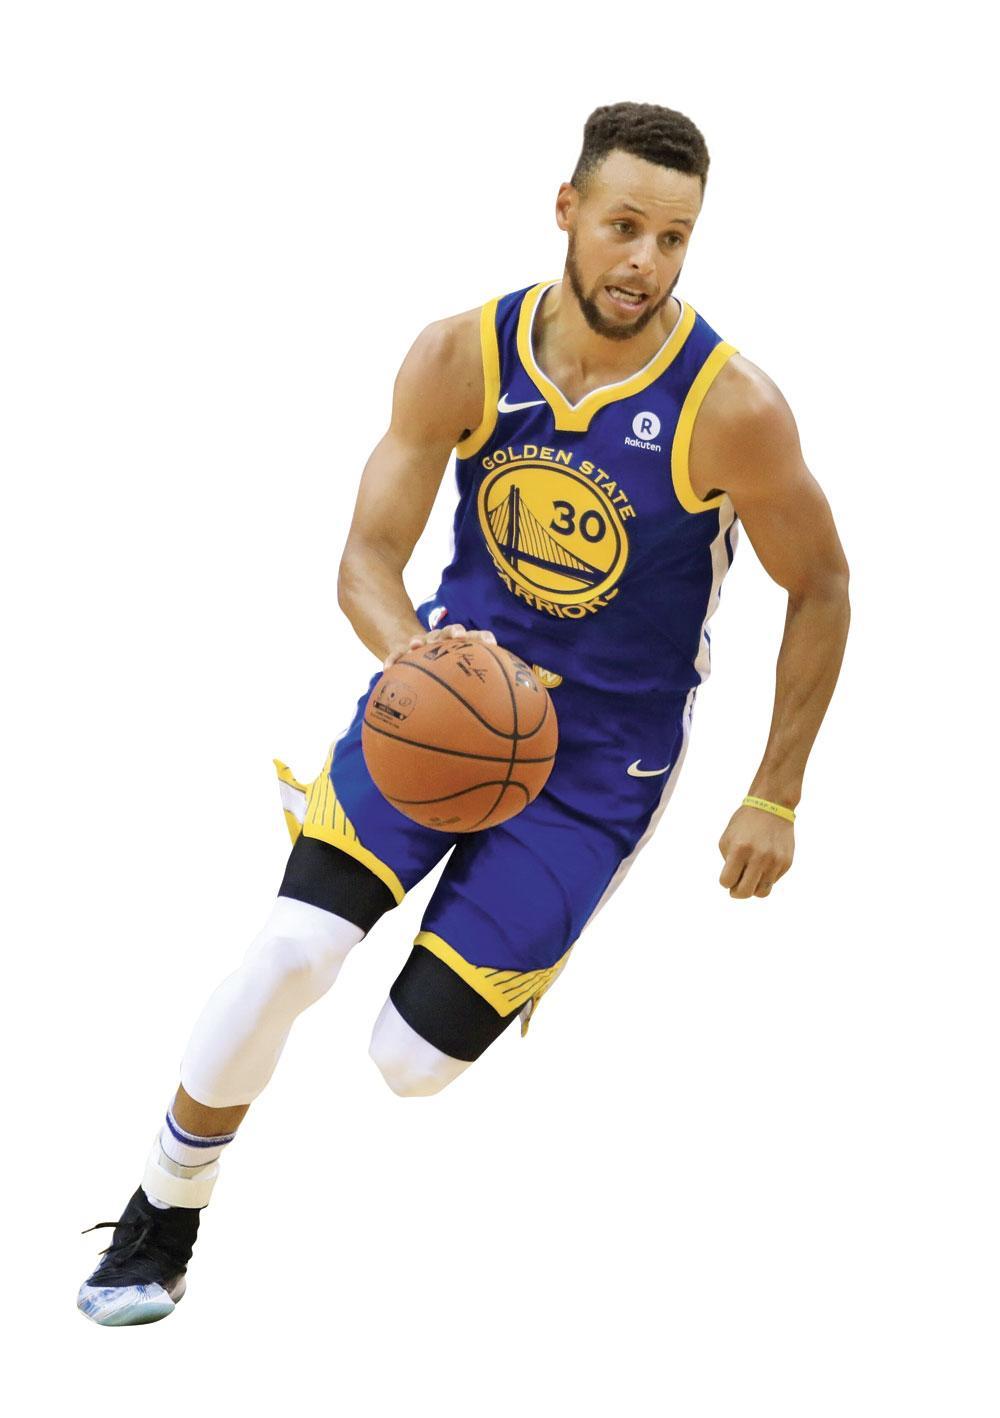 Volgens een ESPN-poll is Stephen Curry de favoriete sporter bij Amerikaanse 12- tot 17-jarigen.